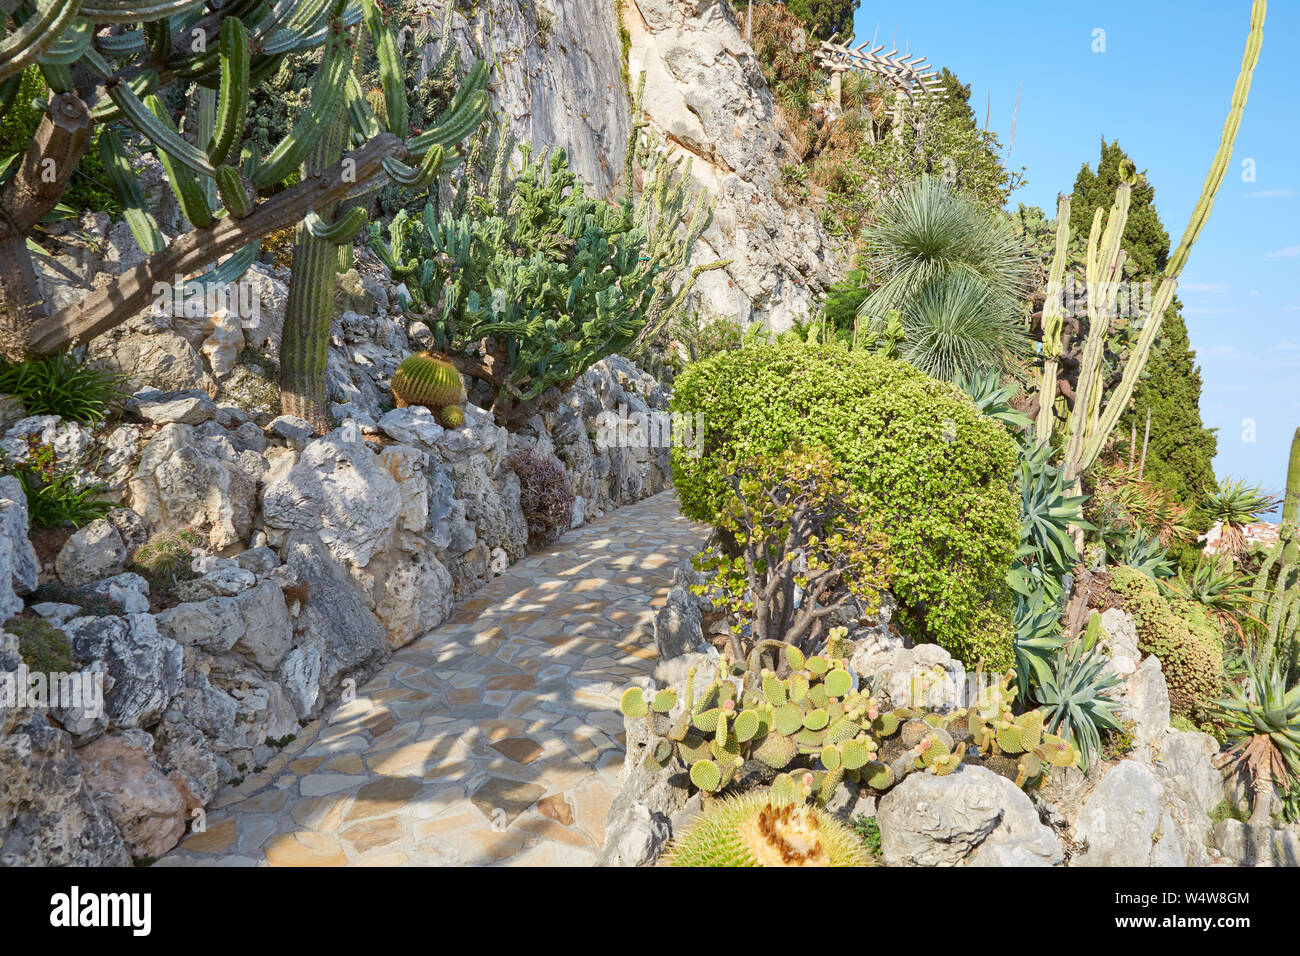 MONTE CARLO, MONACO - 20. AUGUST 2016: Der exotische Garten weg und Felsen mit seltenen sukkulenten Pflanzen an einem sonnigen Sommertag in Monte Carlo, Monaco. Stockfoto